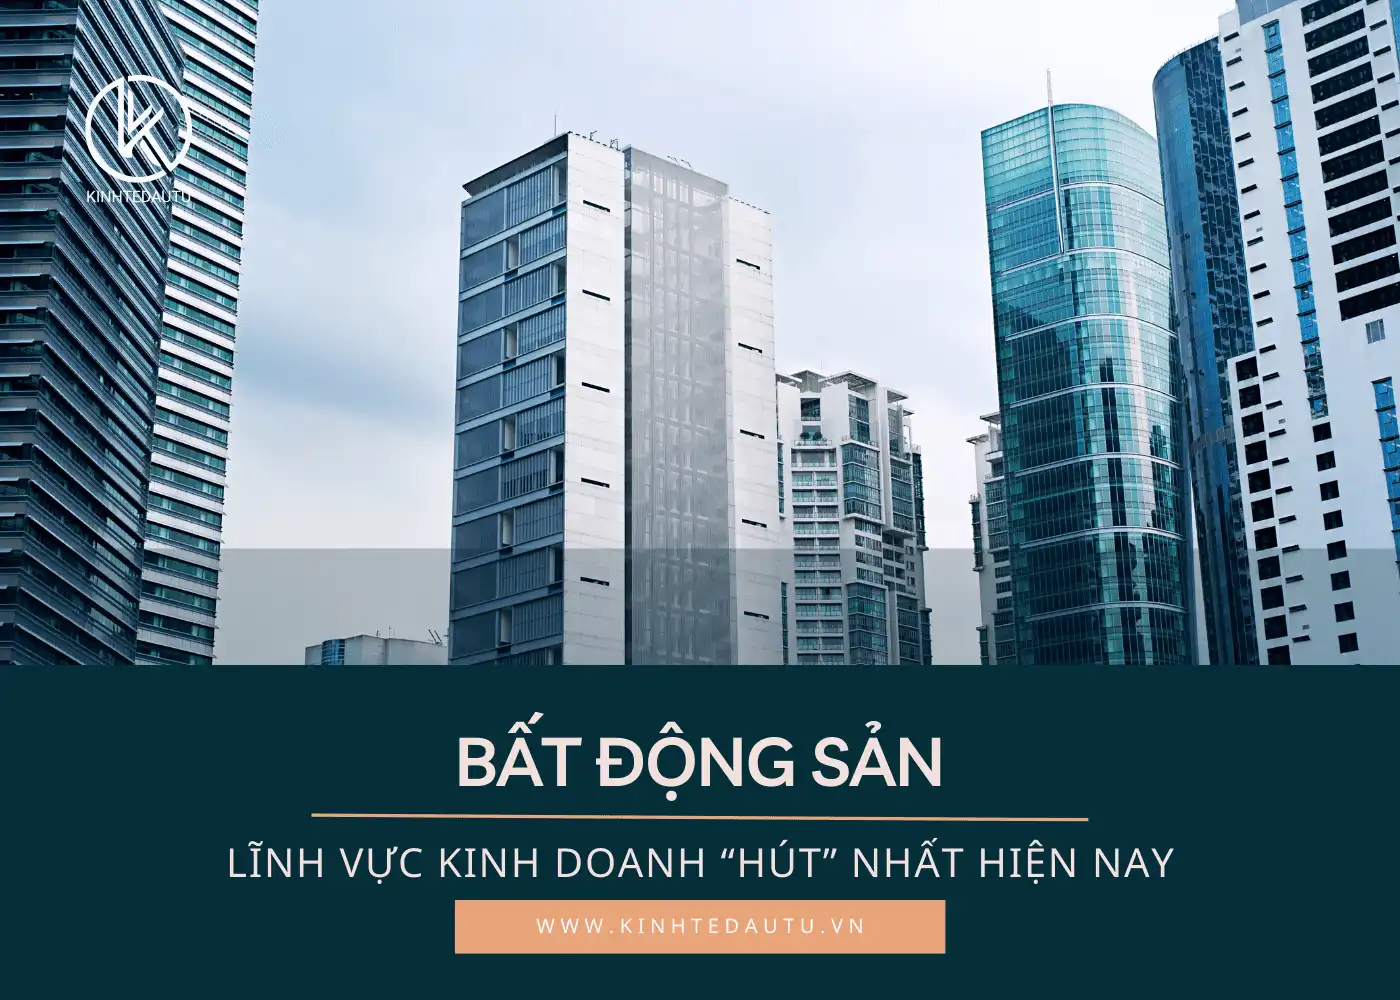 Bat-Dong-San-Linh-vuc-kinh-doanh-hut-nhat-hien-nay.png